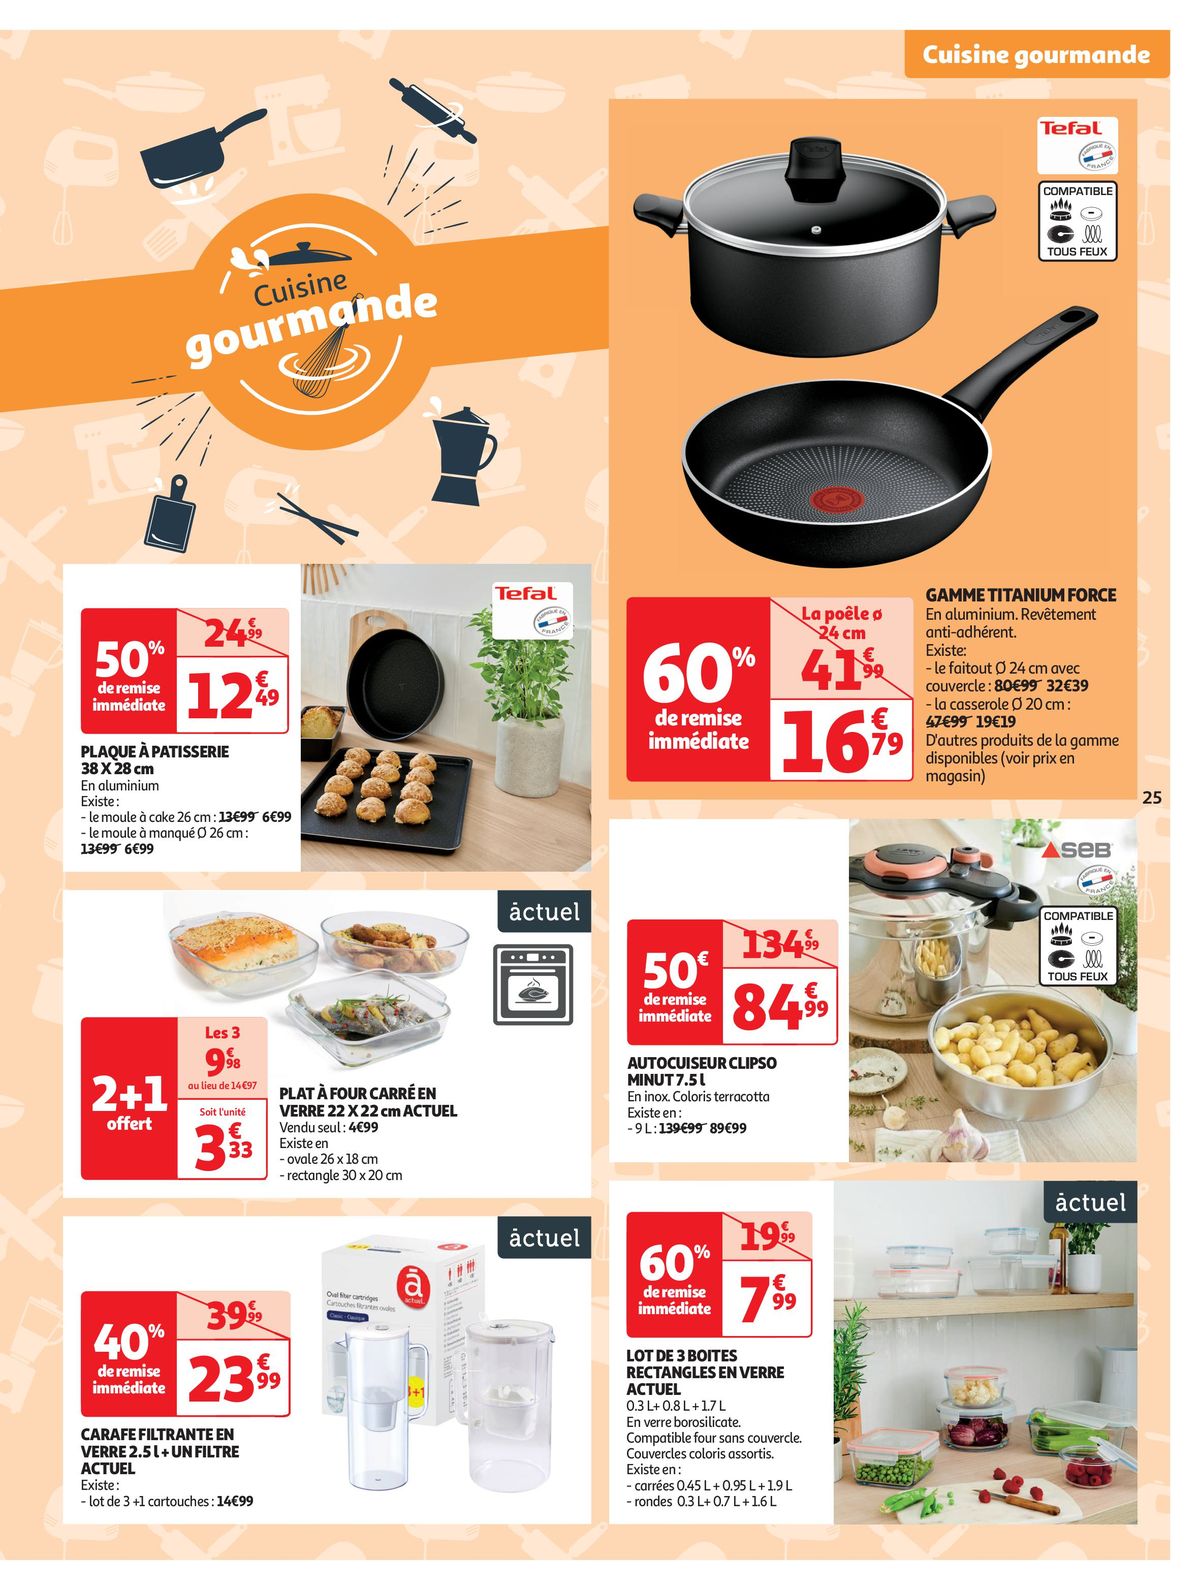 Catalogue Spécial Cuisine Gourmane dans votre supermarché, page 00025